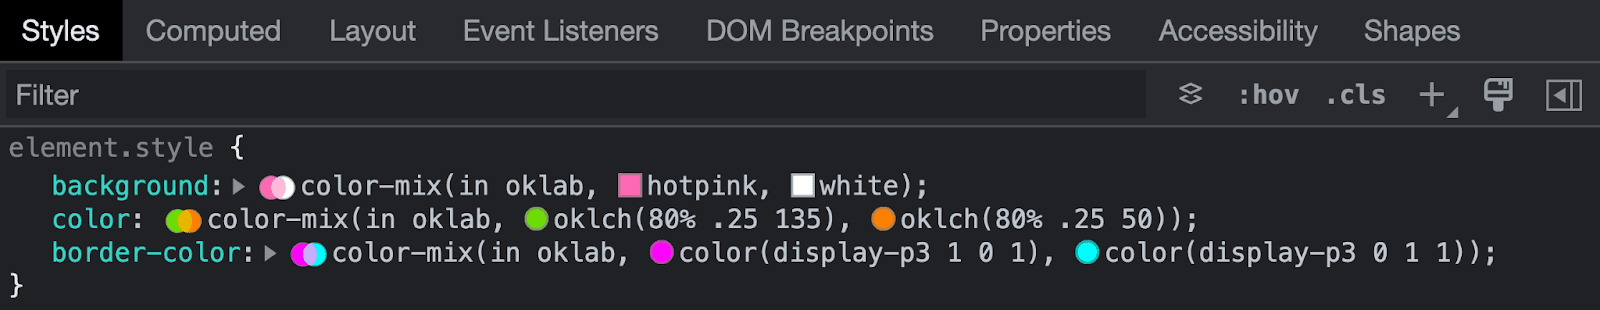 تصویری از Chrome DevTools در حال بررسی نحو ترکیب رنگ.